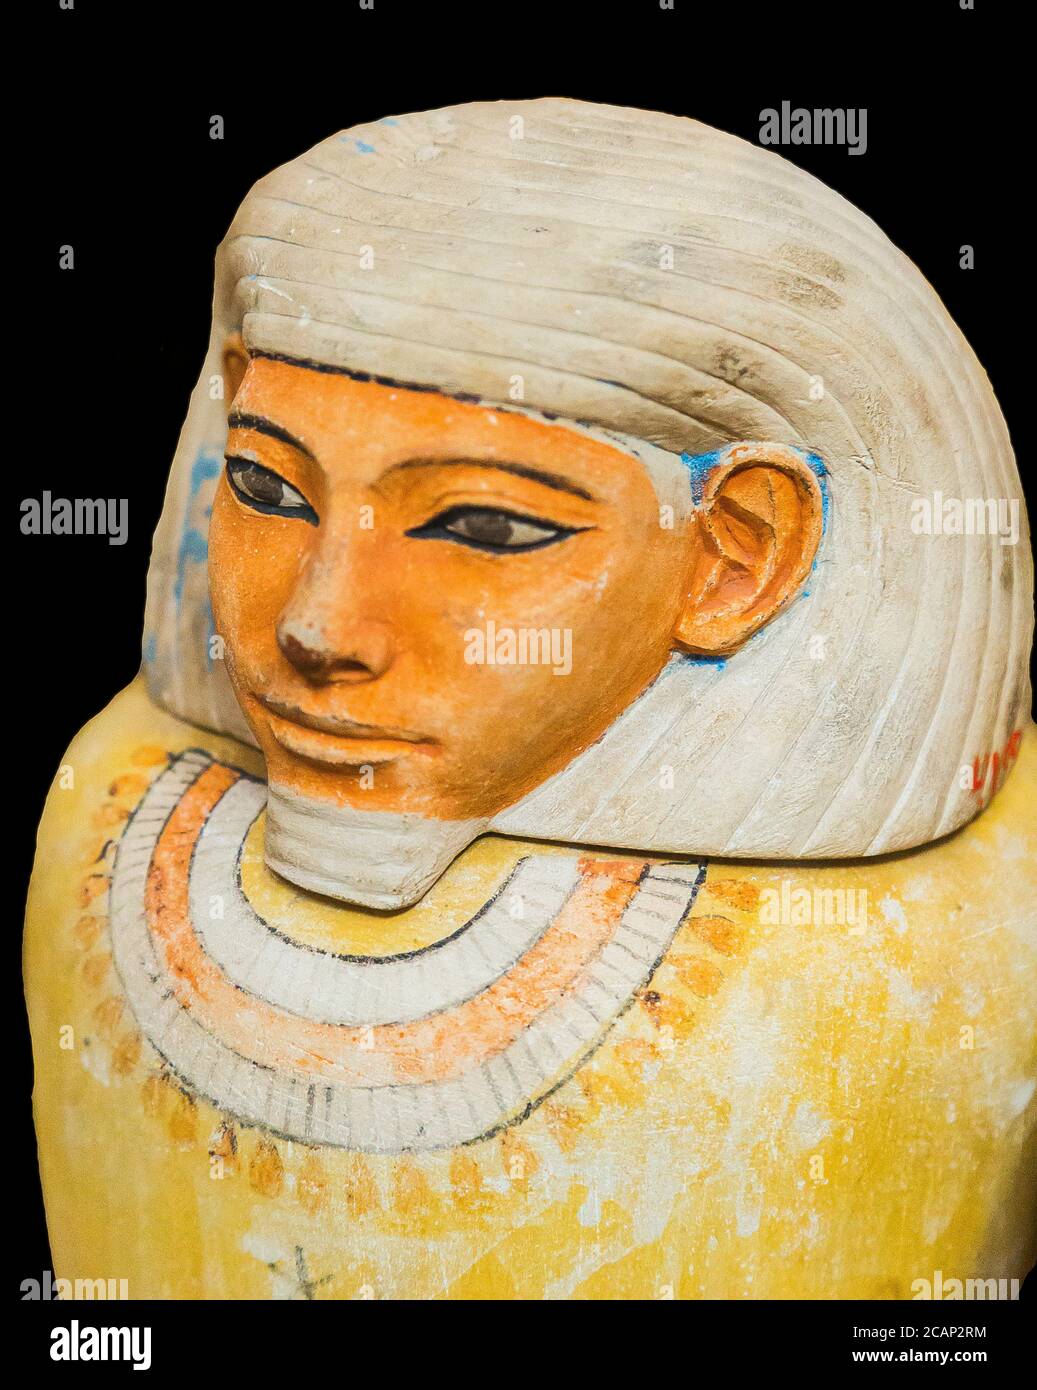 Égypte, le Caire, Musée égyptien, un pot canopé, trouvé à Saqqara, datant du Royaume du milieu. Calcaire, recouvert de la tête d'un fils d'Horus. Banque D'Images